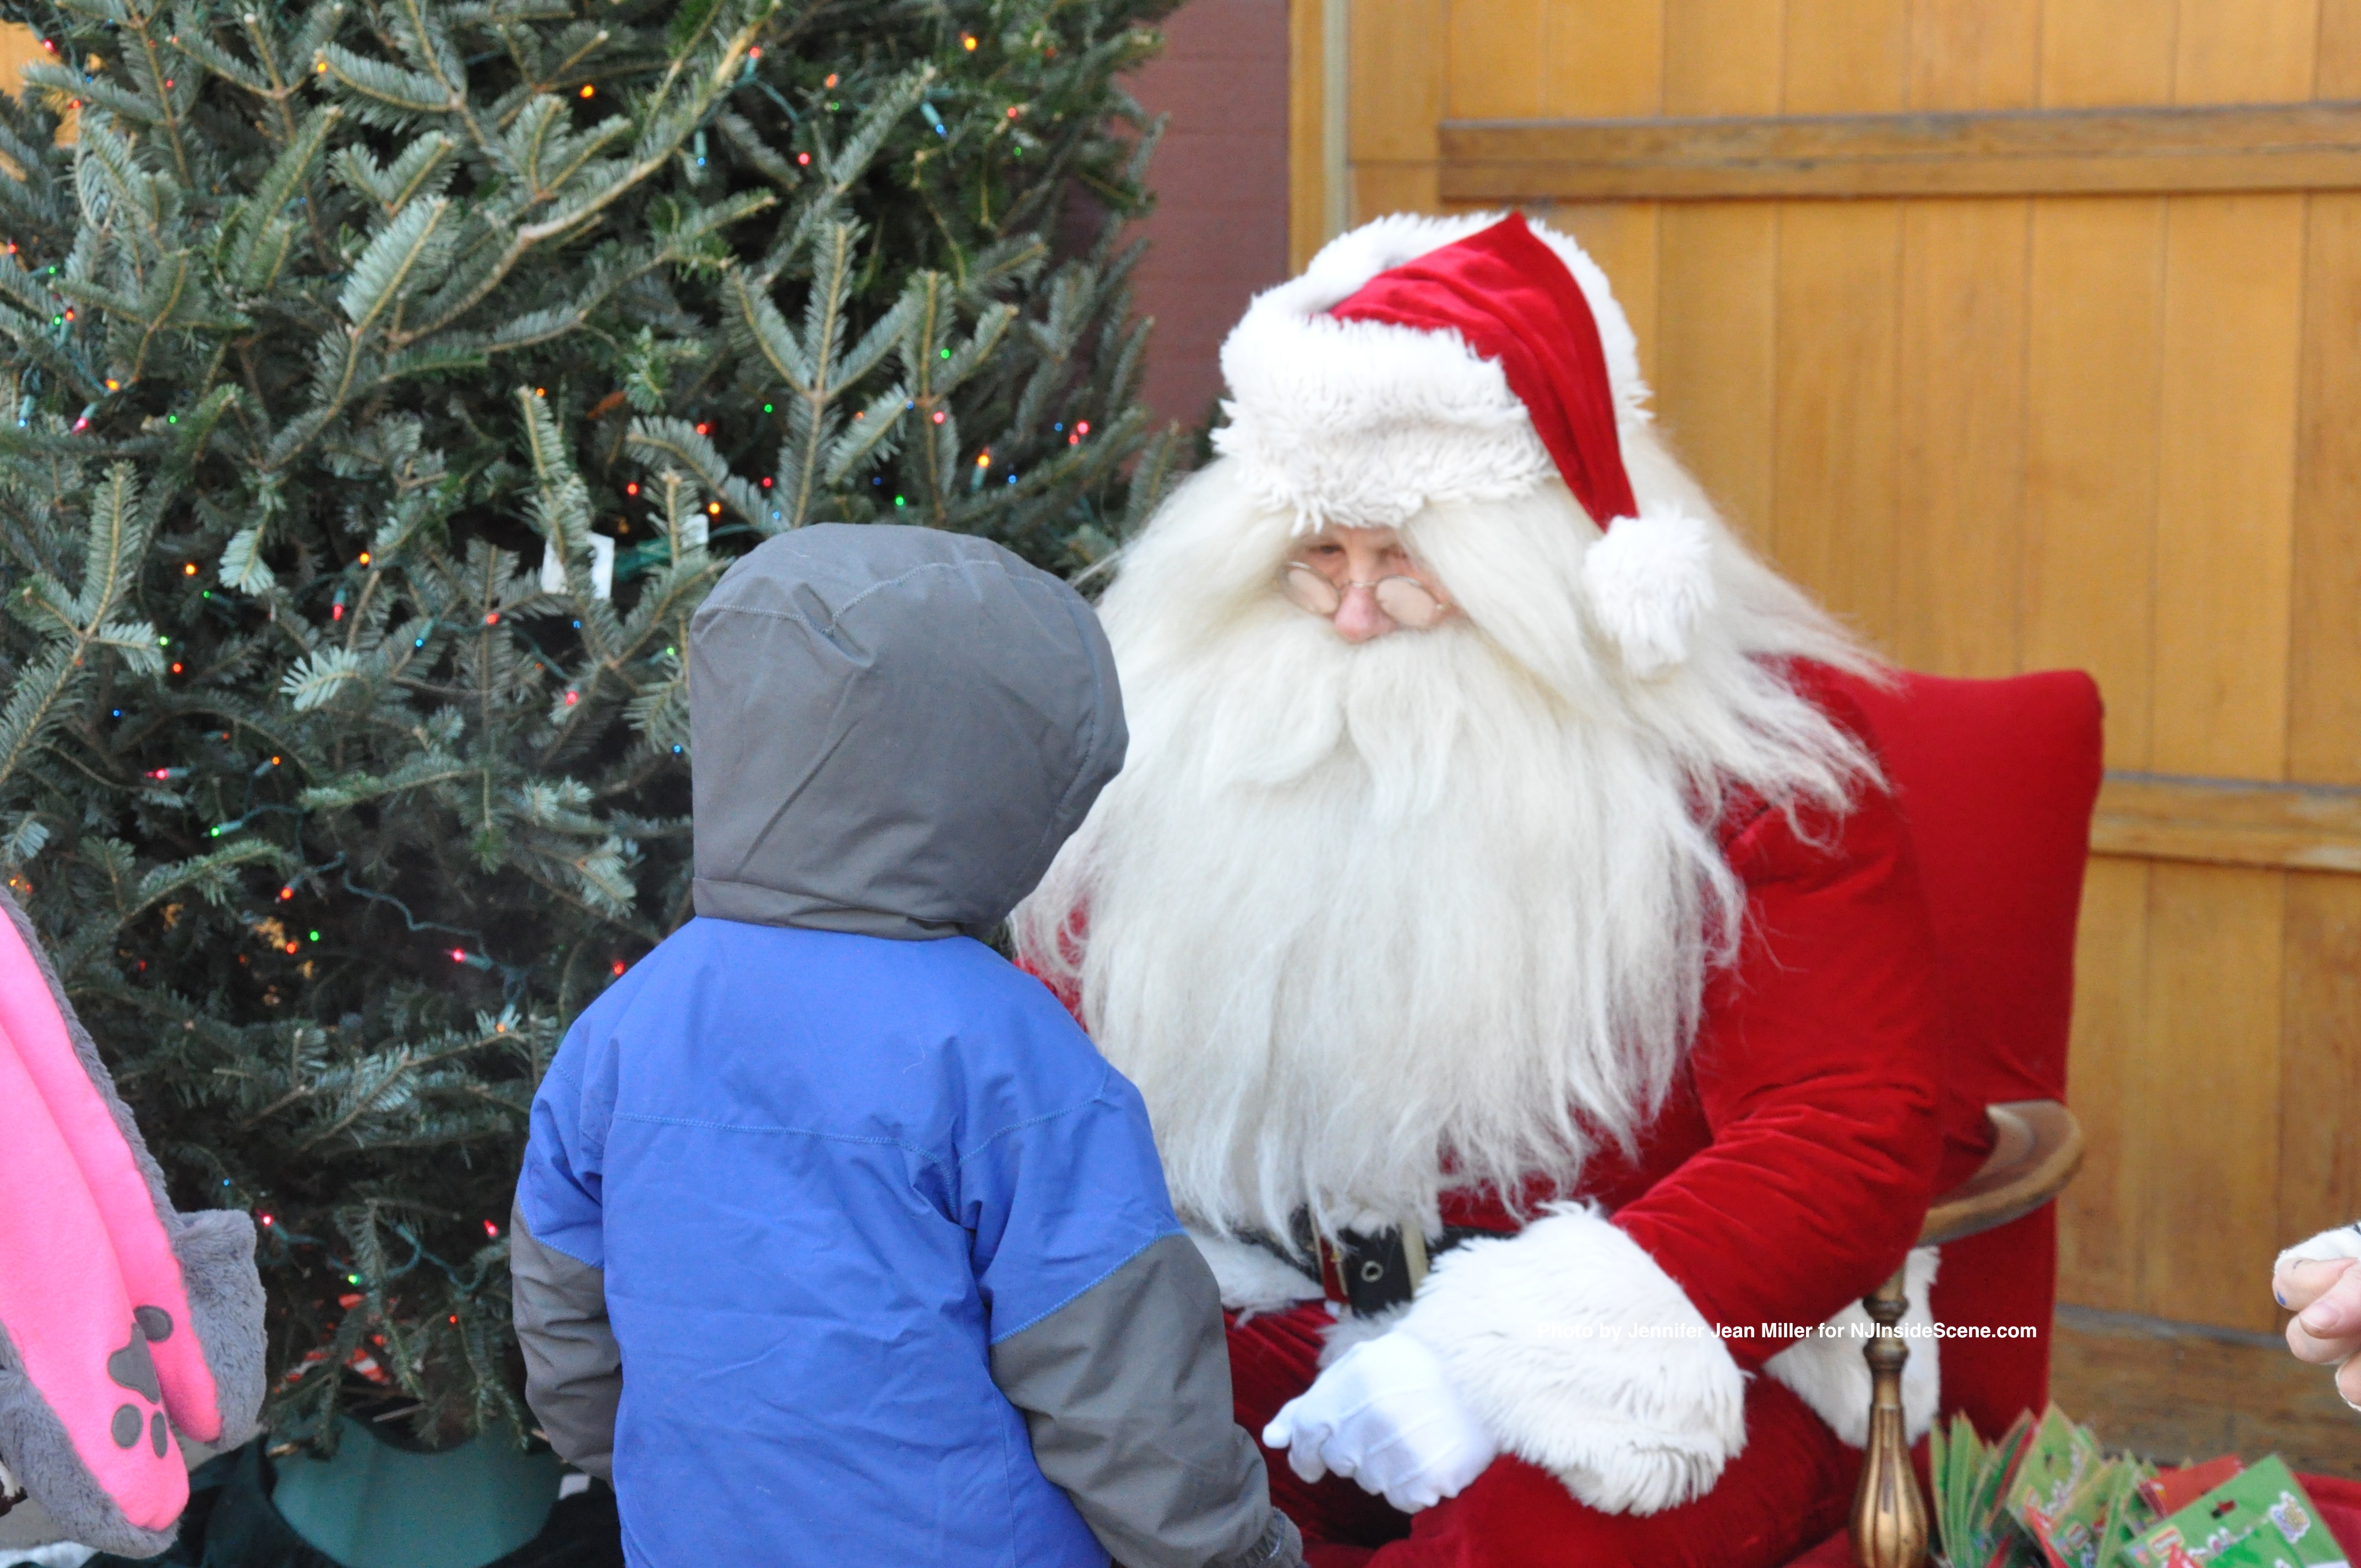 Following the parade, a young man visits Santa.